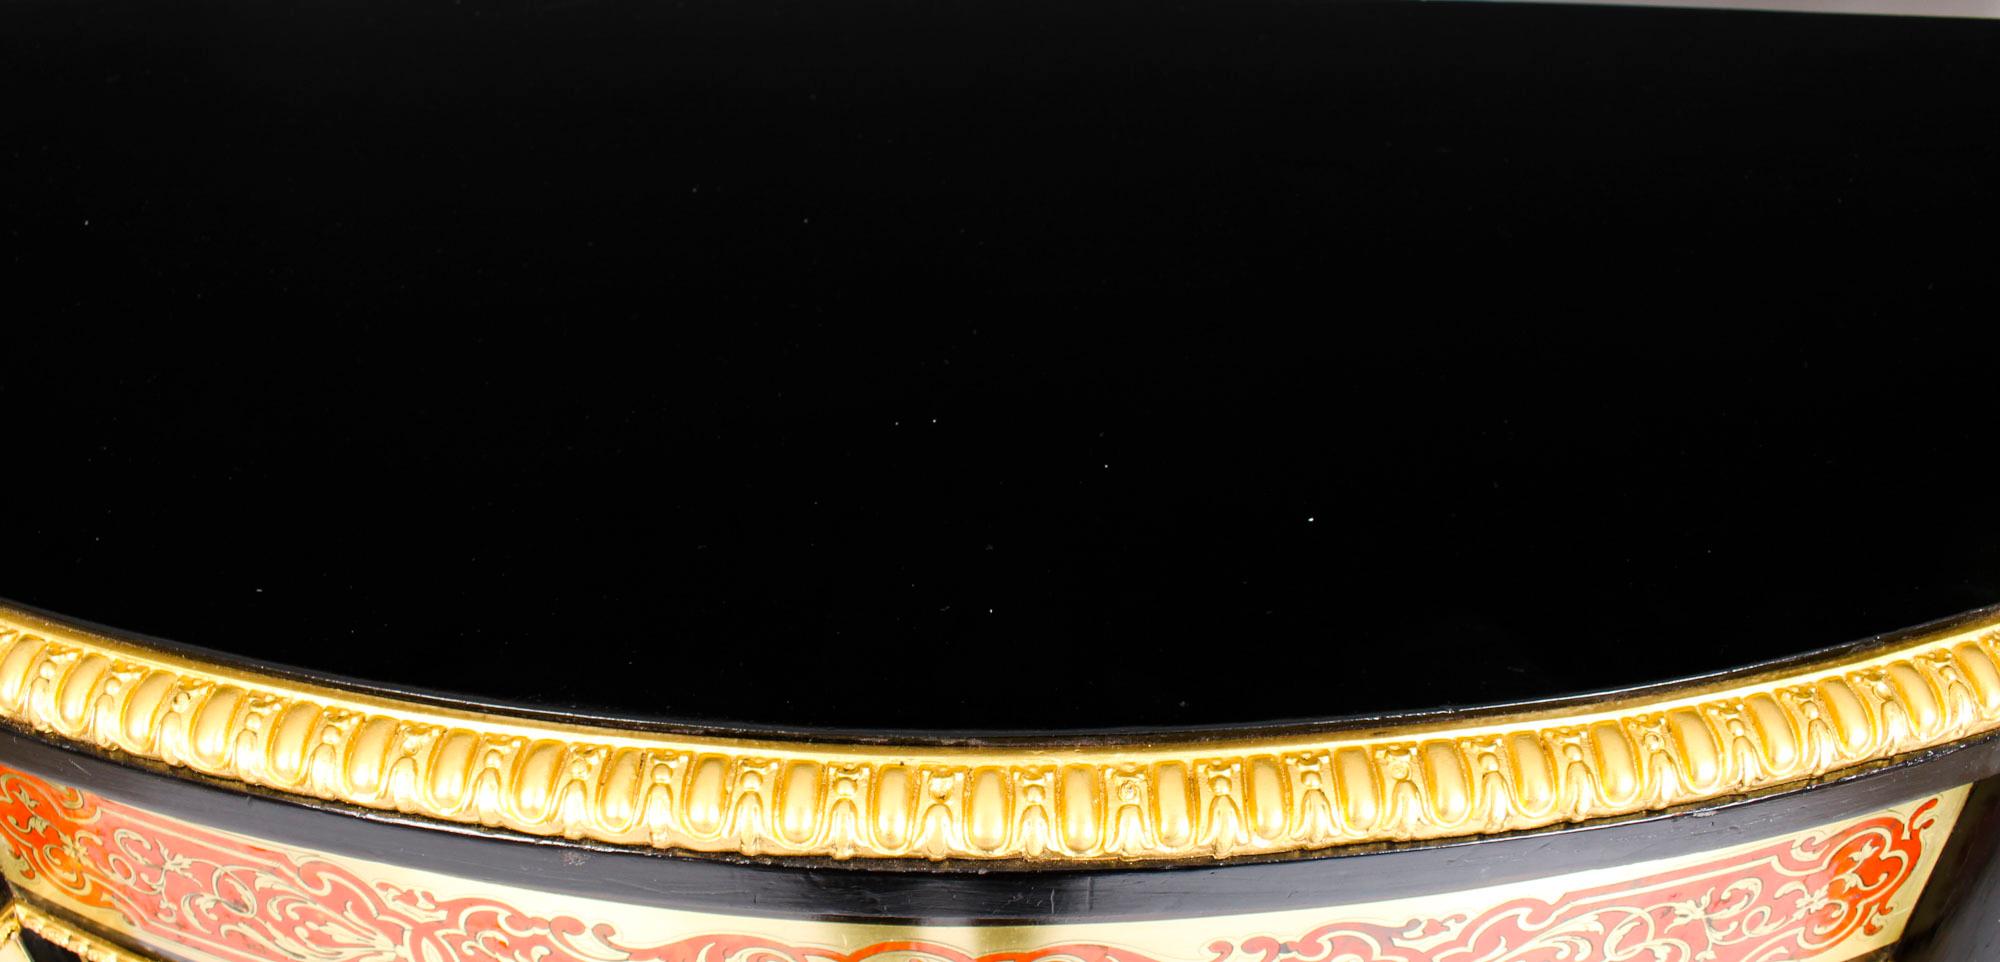 Il s'agit d'une importante crédence serpentine victorienne, ébonisée, ornée de bronze doré et de marqueterie de laiton rouge de Boulle, datant d'environ 1870.

Elle est magnifiquement incrustée de laiton découpé, de feuillages d'acanthe en volutes,